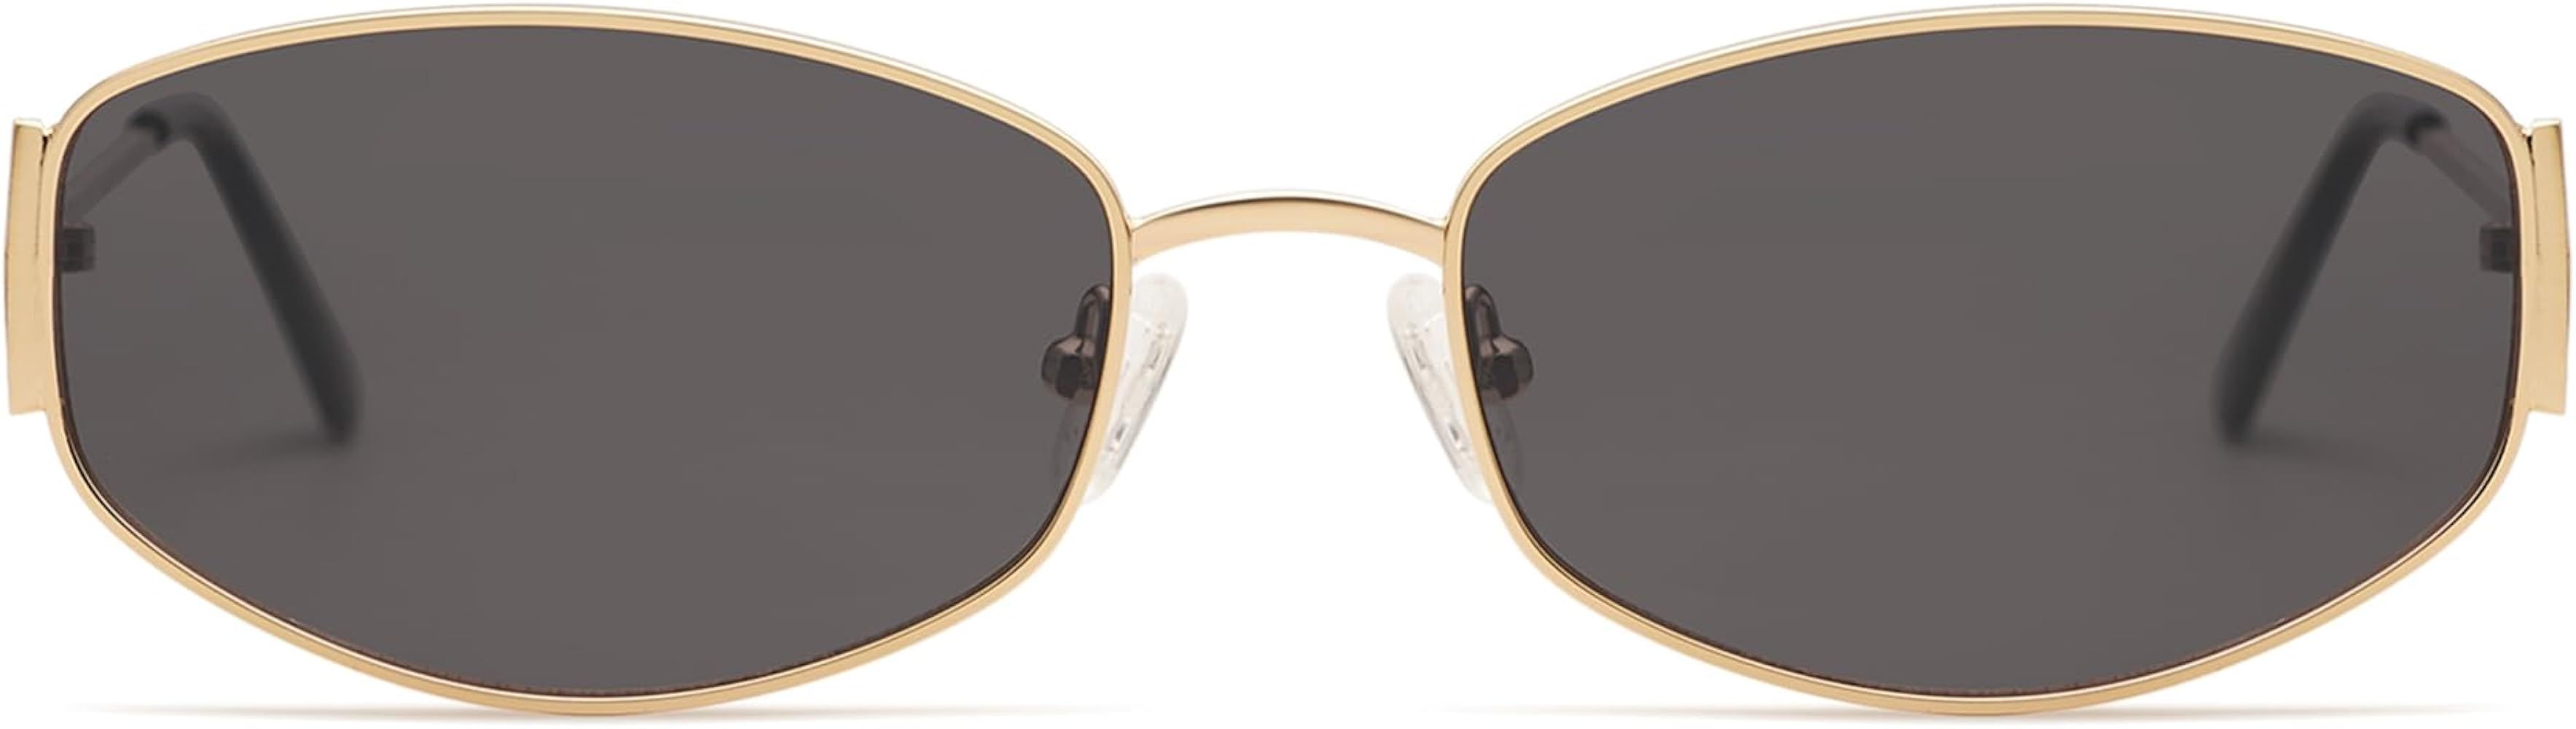 Appassal Retro Oval Sunglasses For Women Men Hexagonal Rectangle Metal Frame Sun Glasses AP3625 | Amazon (US)